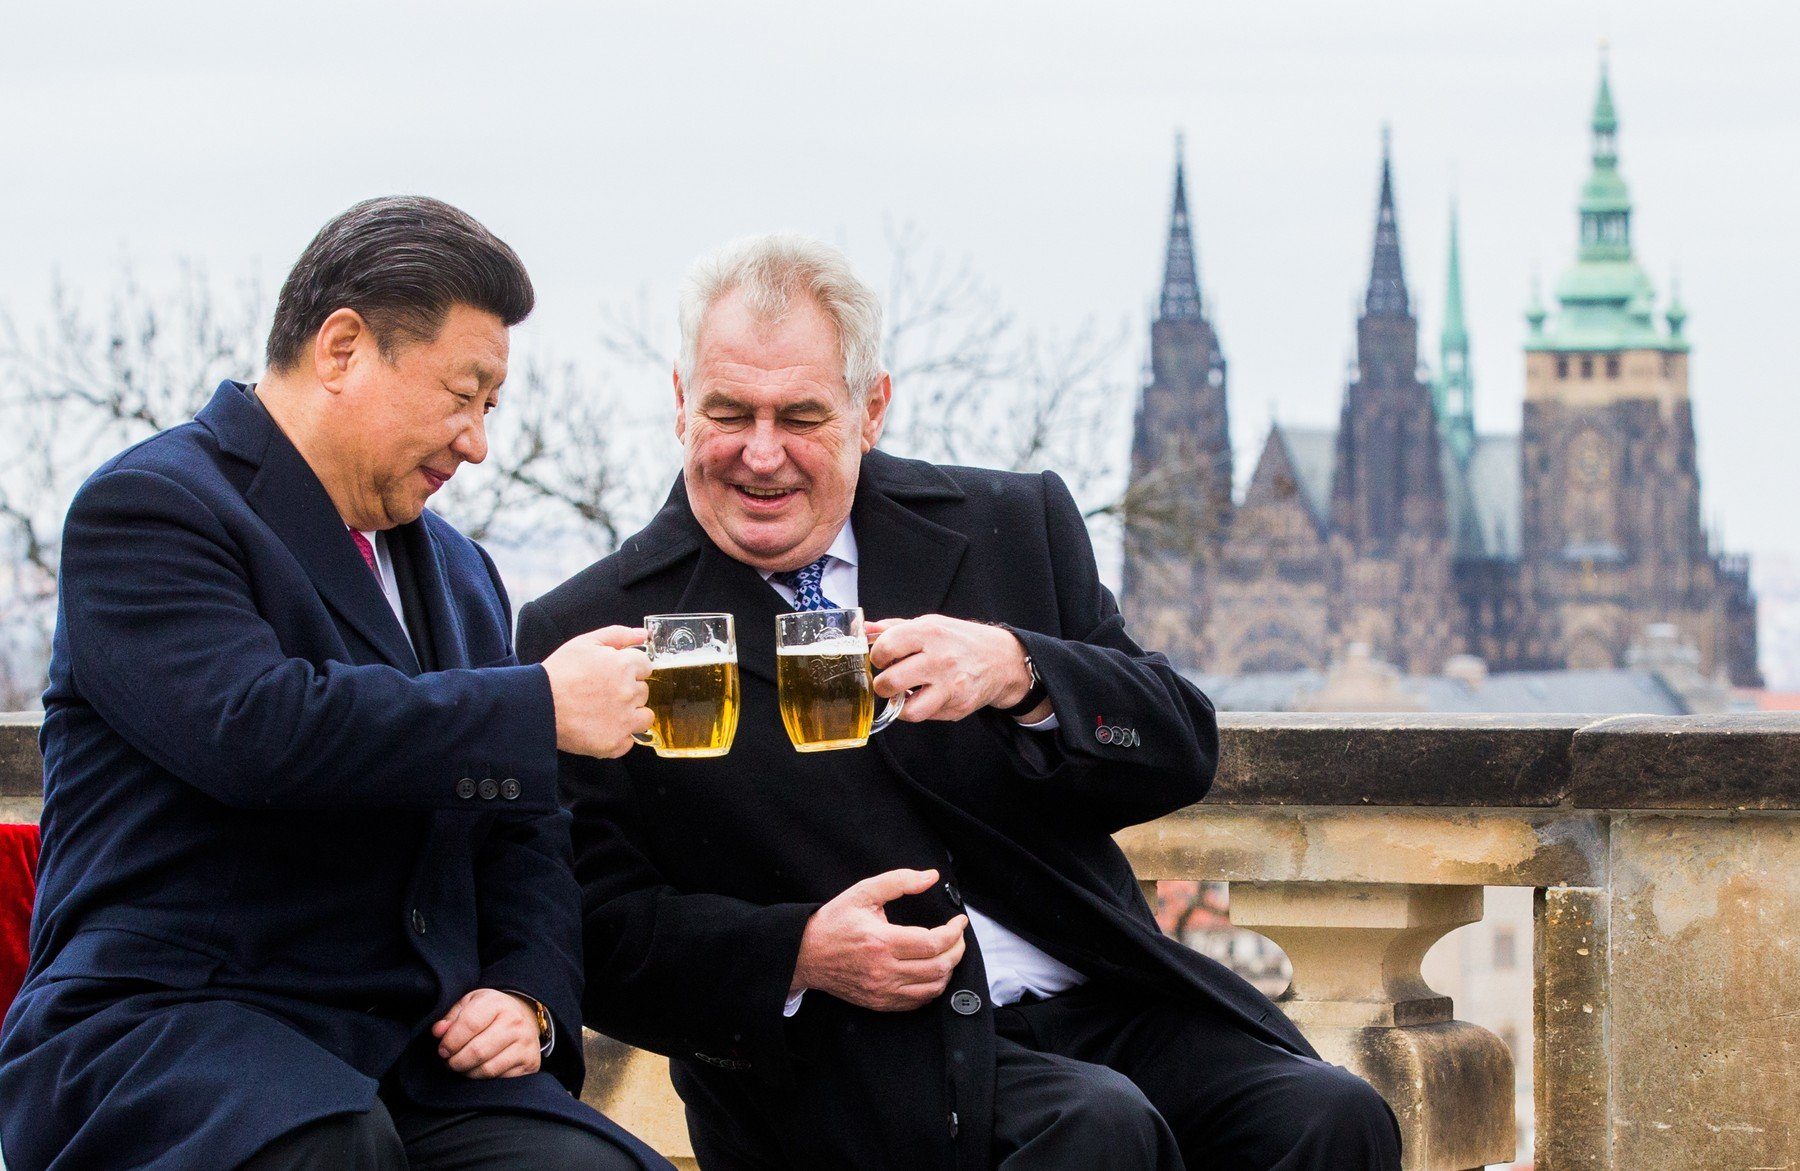 Český prezident Miloš Zeman s čínským prezidentem Si Ťin-pchingem při setkání v Praze (březen 2016) | Zdroj: Profimedia